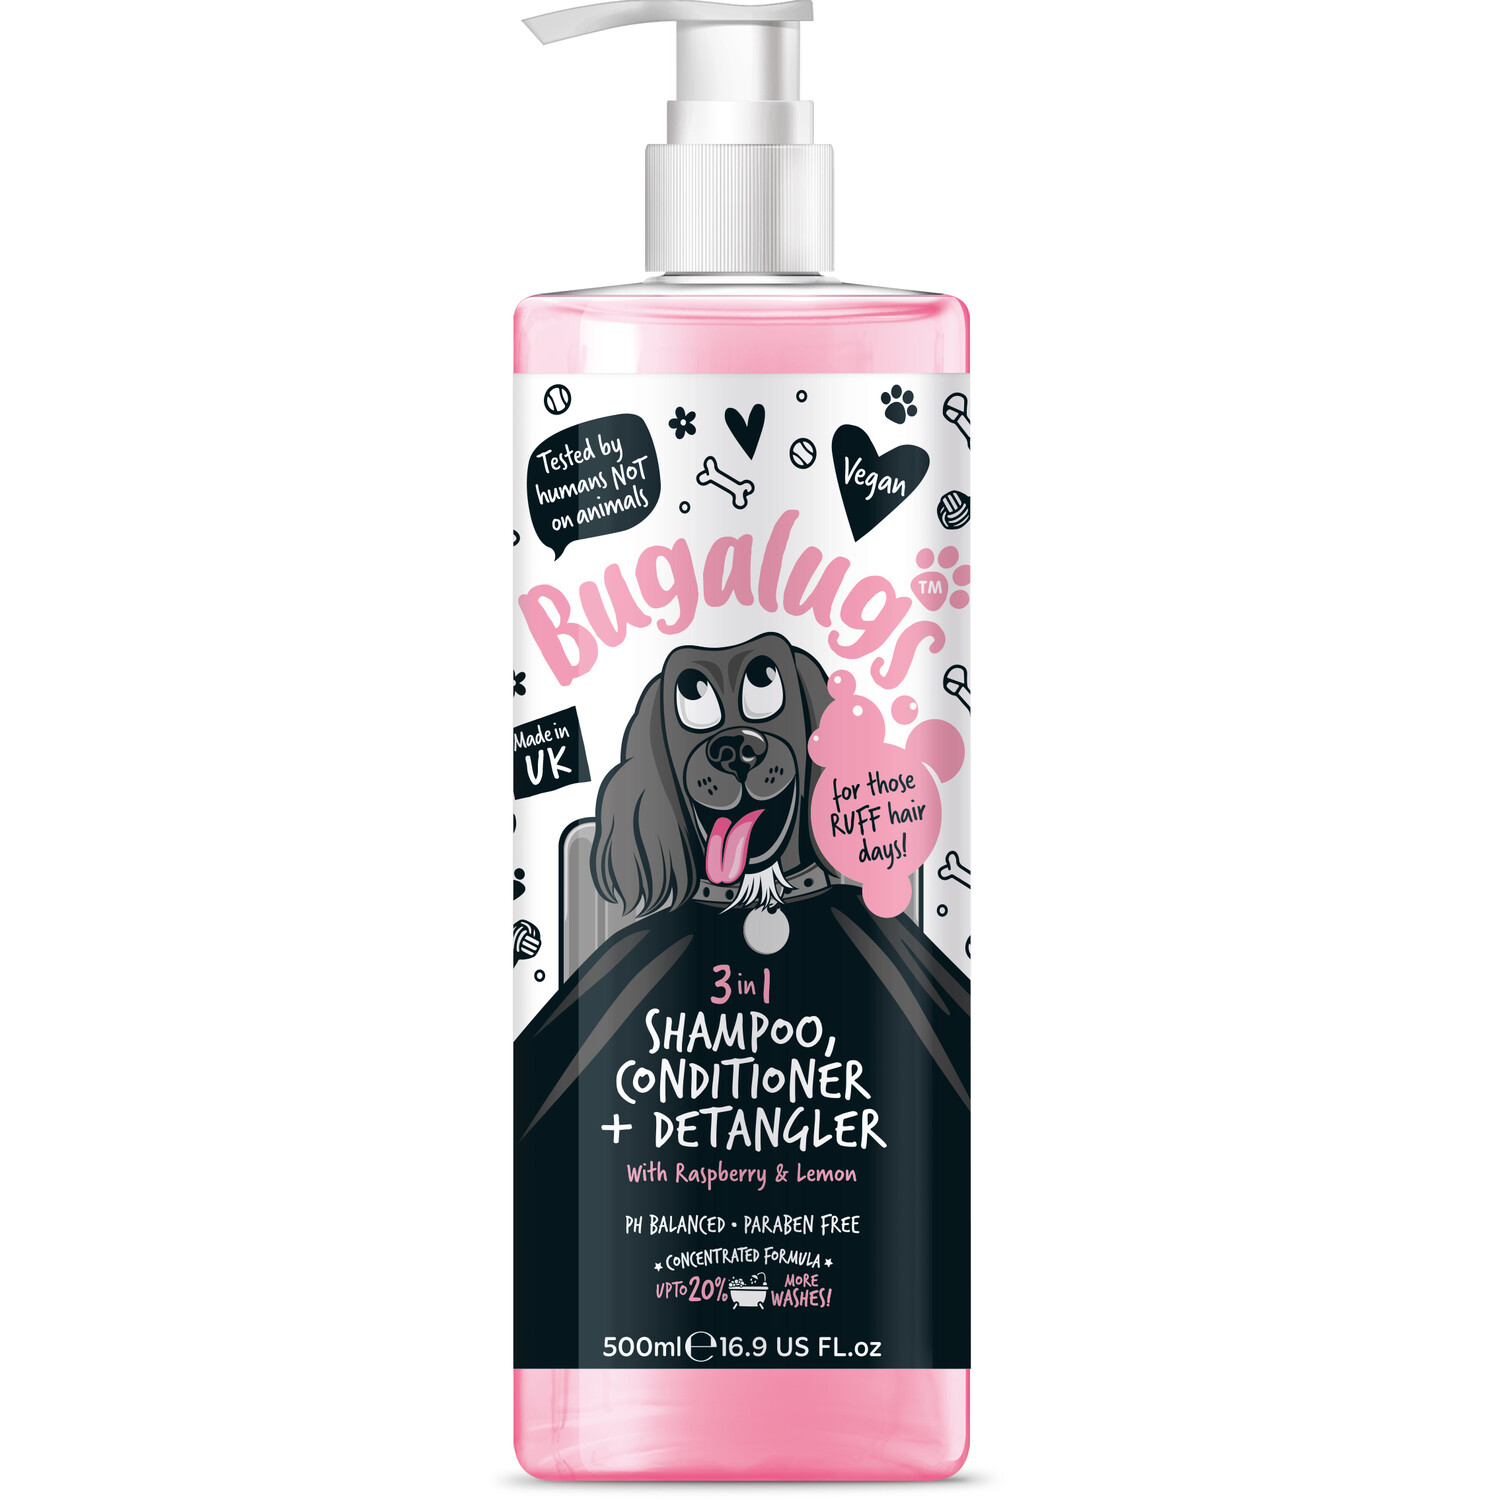 Bugalugs 3 in 1 Dog Shampoo Image